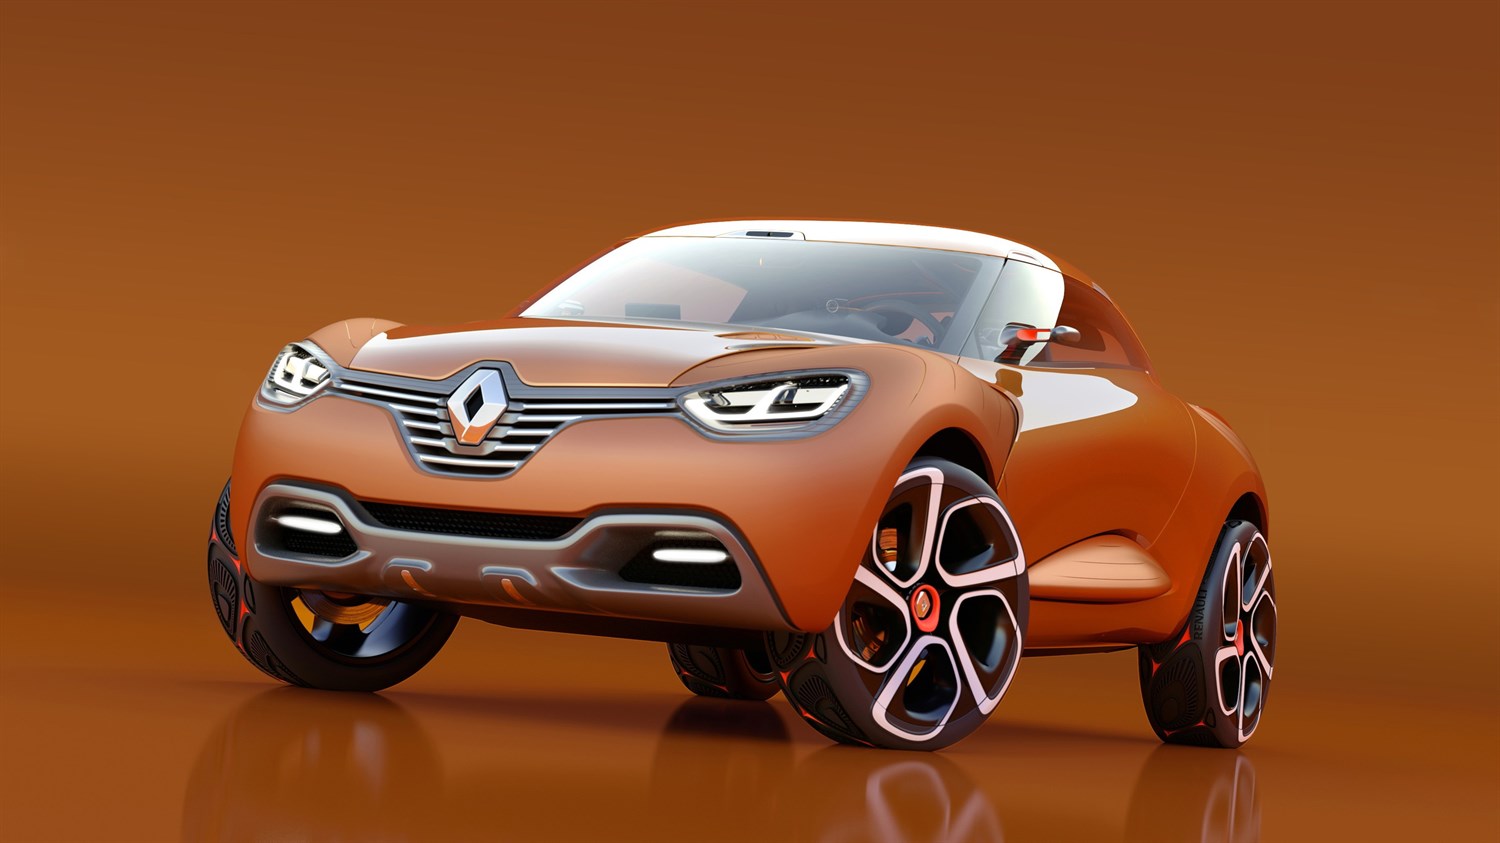 Renault CAPTUR Concept - vue 3/4 avant gauche du véhicule